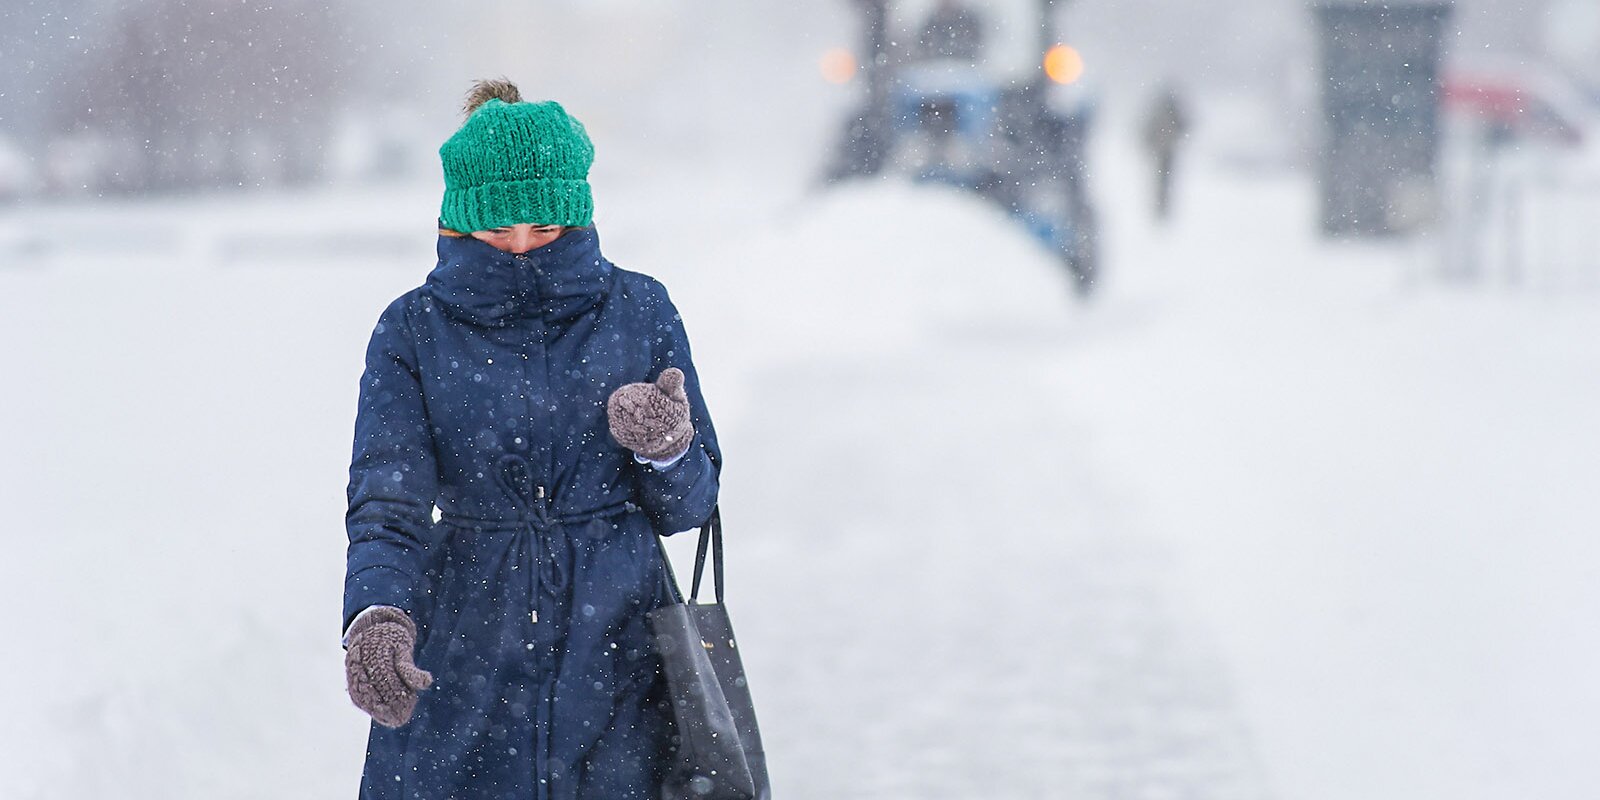 Сотрудники Гидрометцентра спрогнозировали снежную и пасмурную погоду в столице в воскресенье